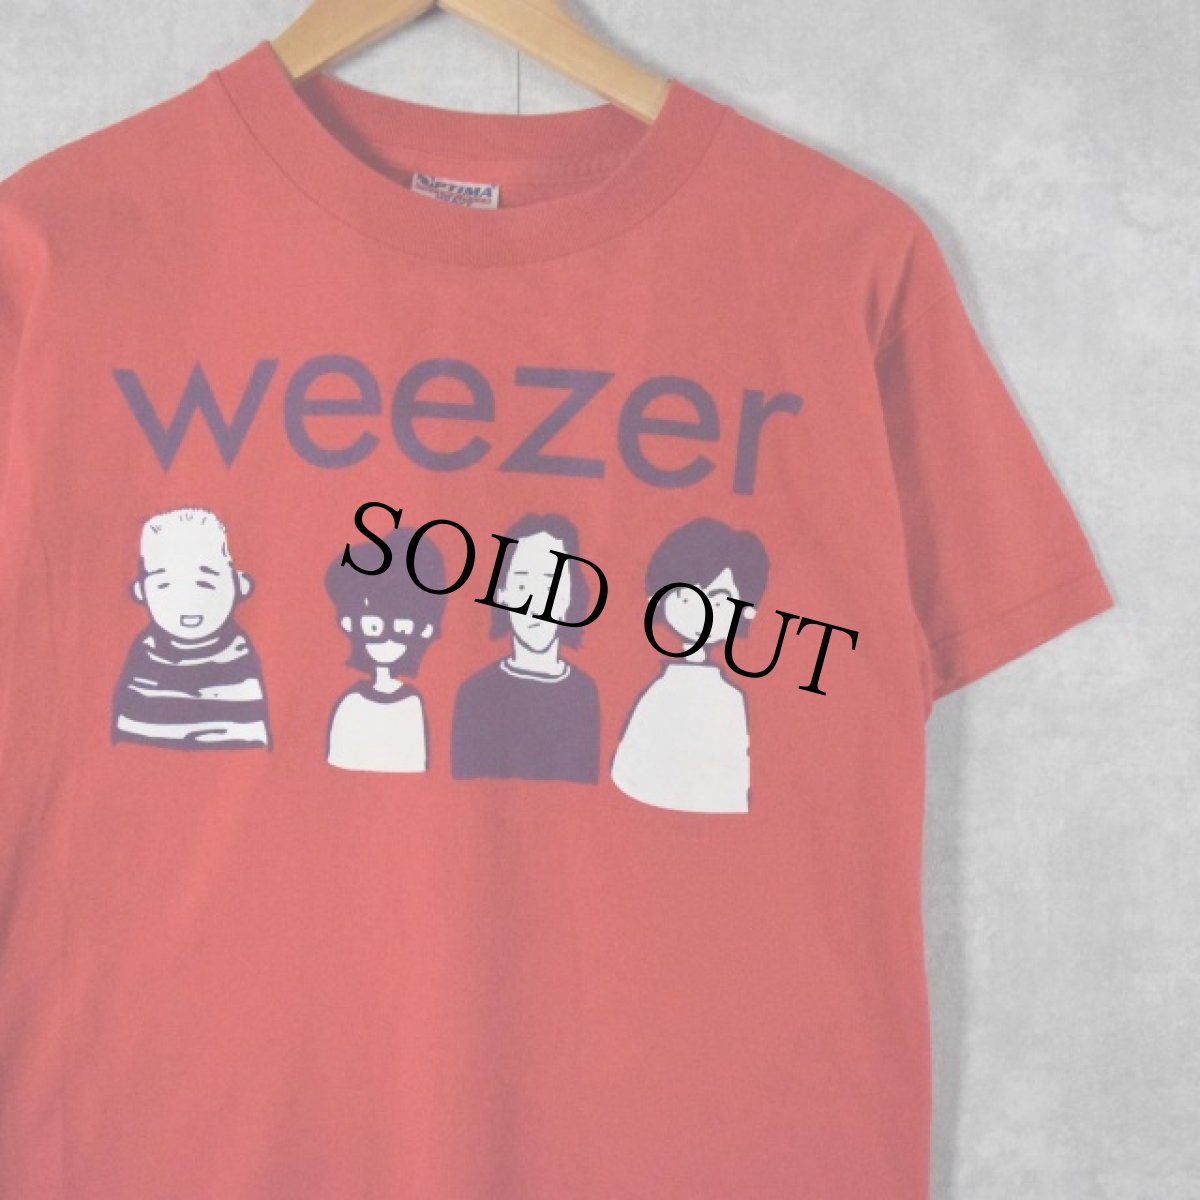 画像1: weezer オルタナロックバンドTシャツ S (1)